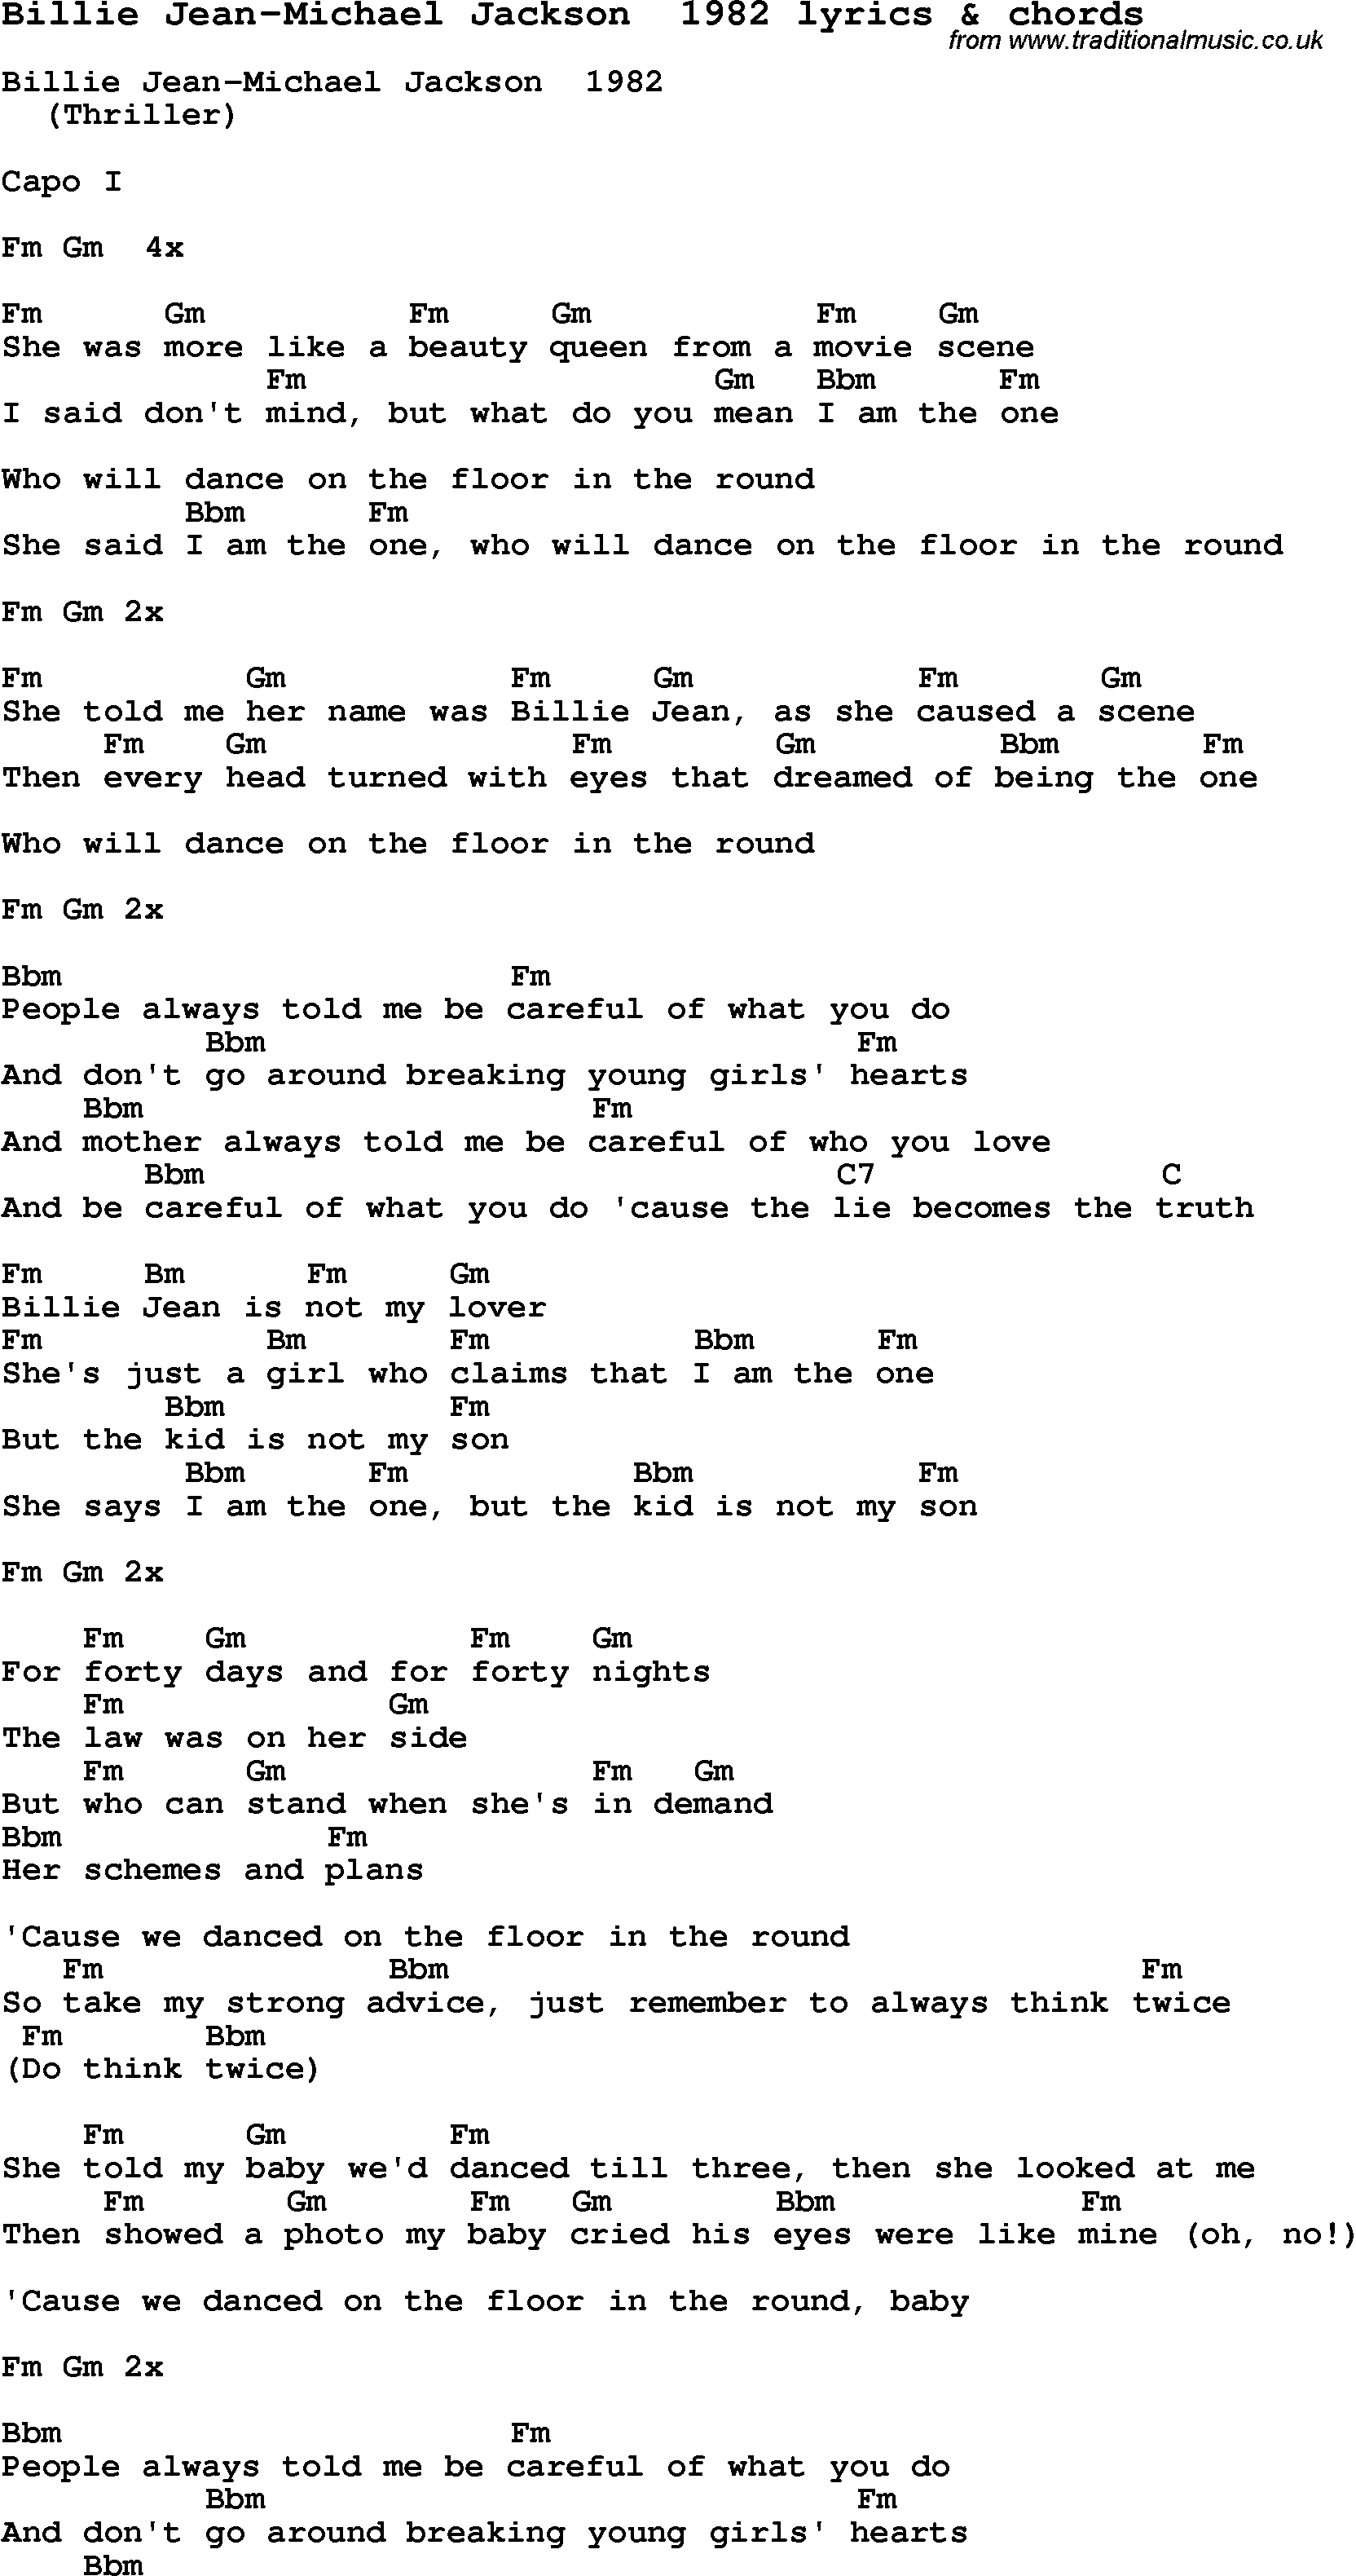 Love Song Lyrics for: Billie Jean-Michael Jackson  1982 with chords for Ukulele, Guitar Banjo etc.